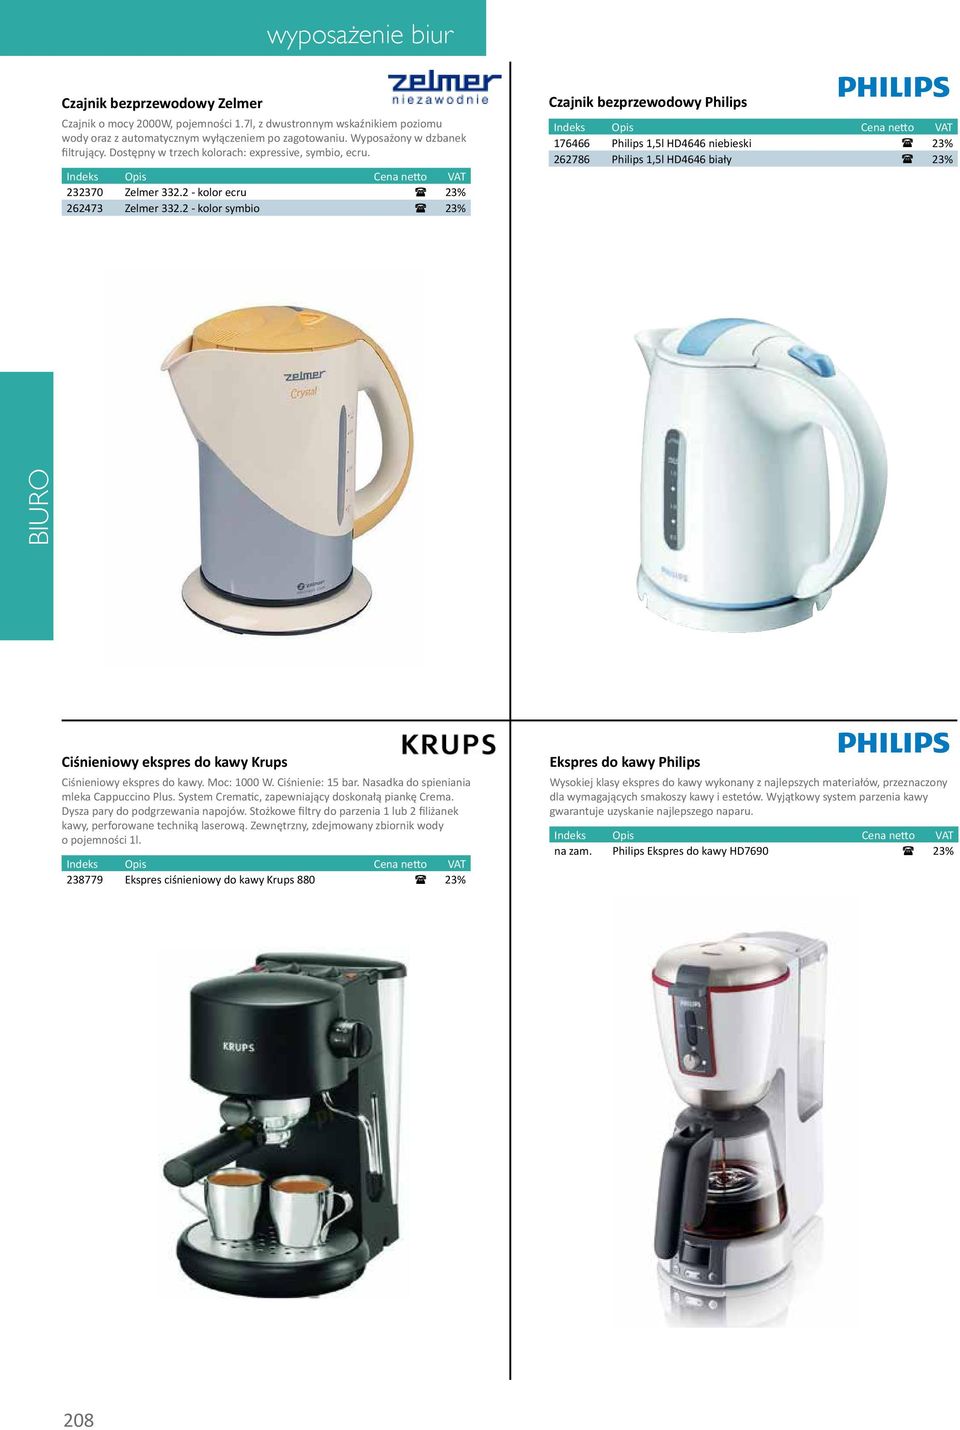 2 - kolor symbio ( 23% Czajnik bezprzewodowy Philips 176466 Philips 1,5l HD4646 niebieski ( 23% 262786 Philips 1,5l HD4646 biały ( 23% Ciśnieniowy ekspres do kawy Krups Ciśnieniowy ekspres do kawy.